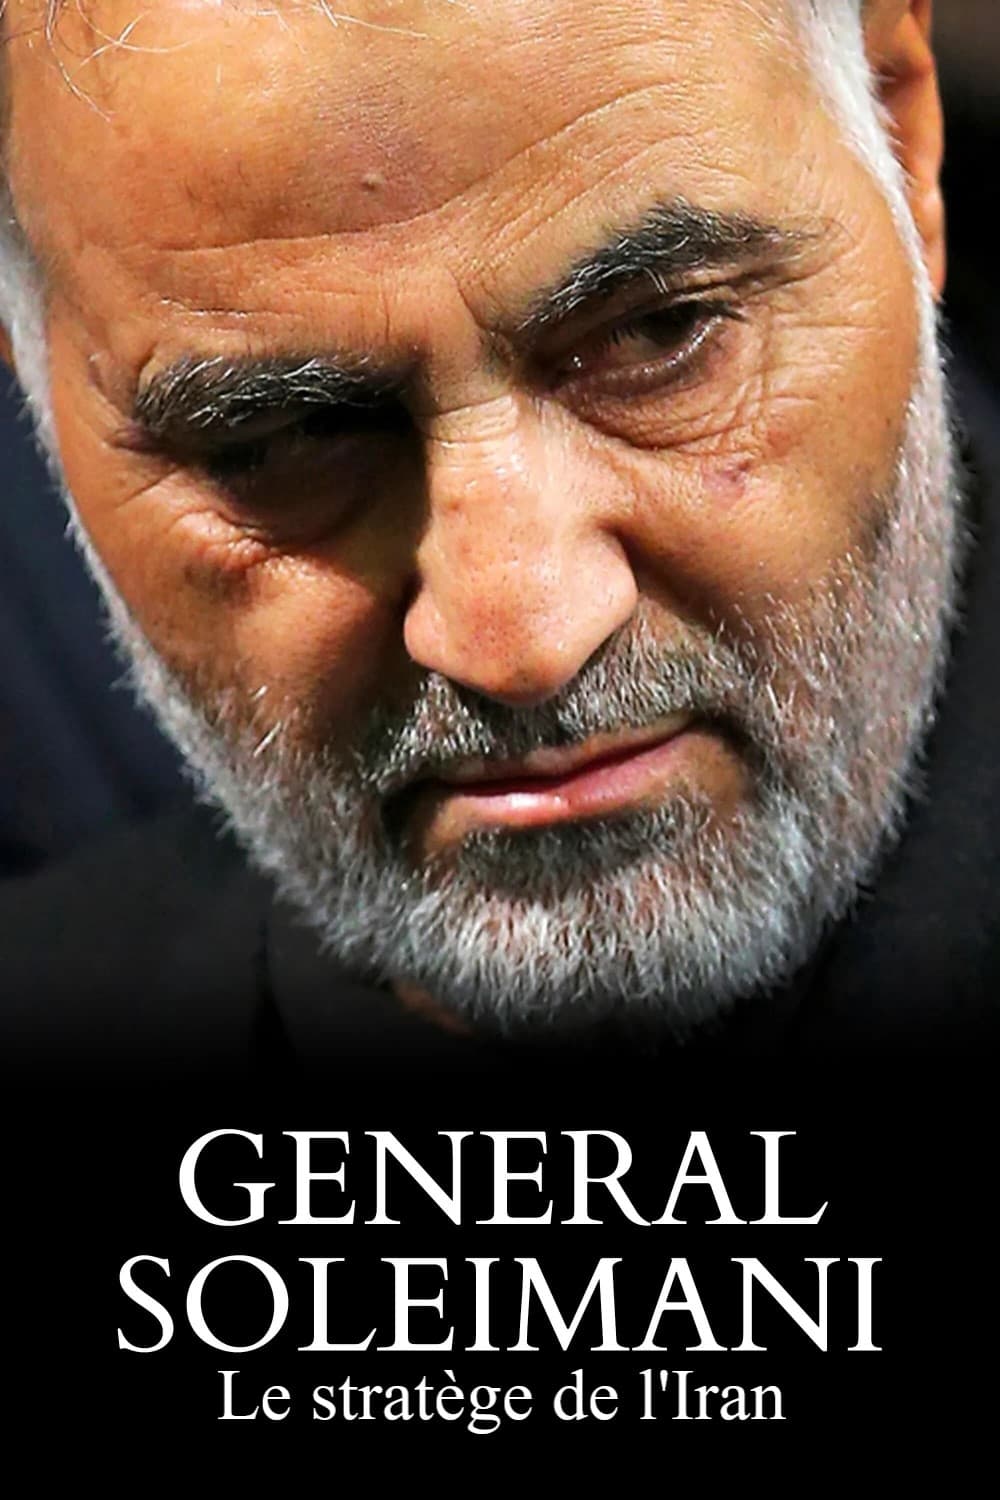 Général Soleimani, le stratège de l'Iran